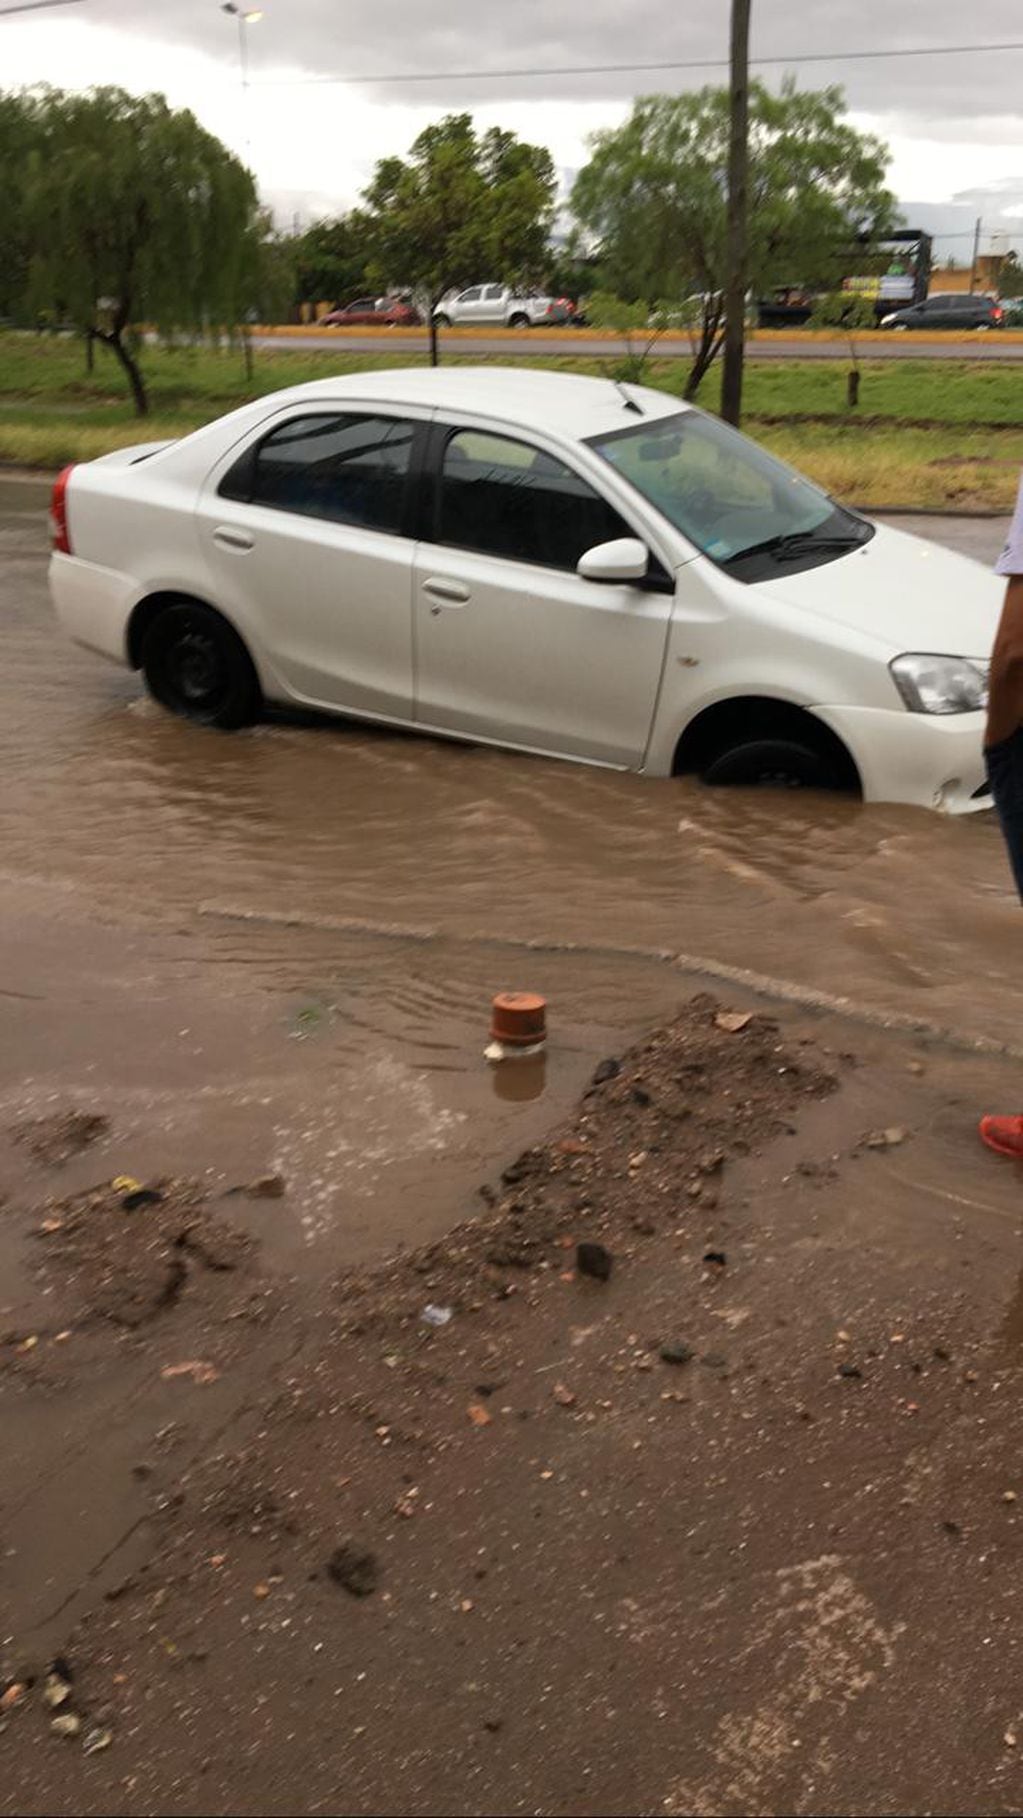 Intensas precipitaciones en La Rioja provocaron el desborde de agua en las calles y afectó a varios autos